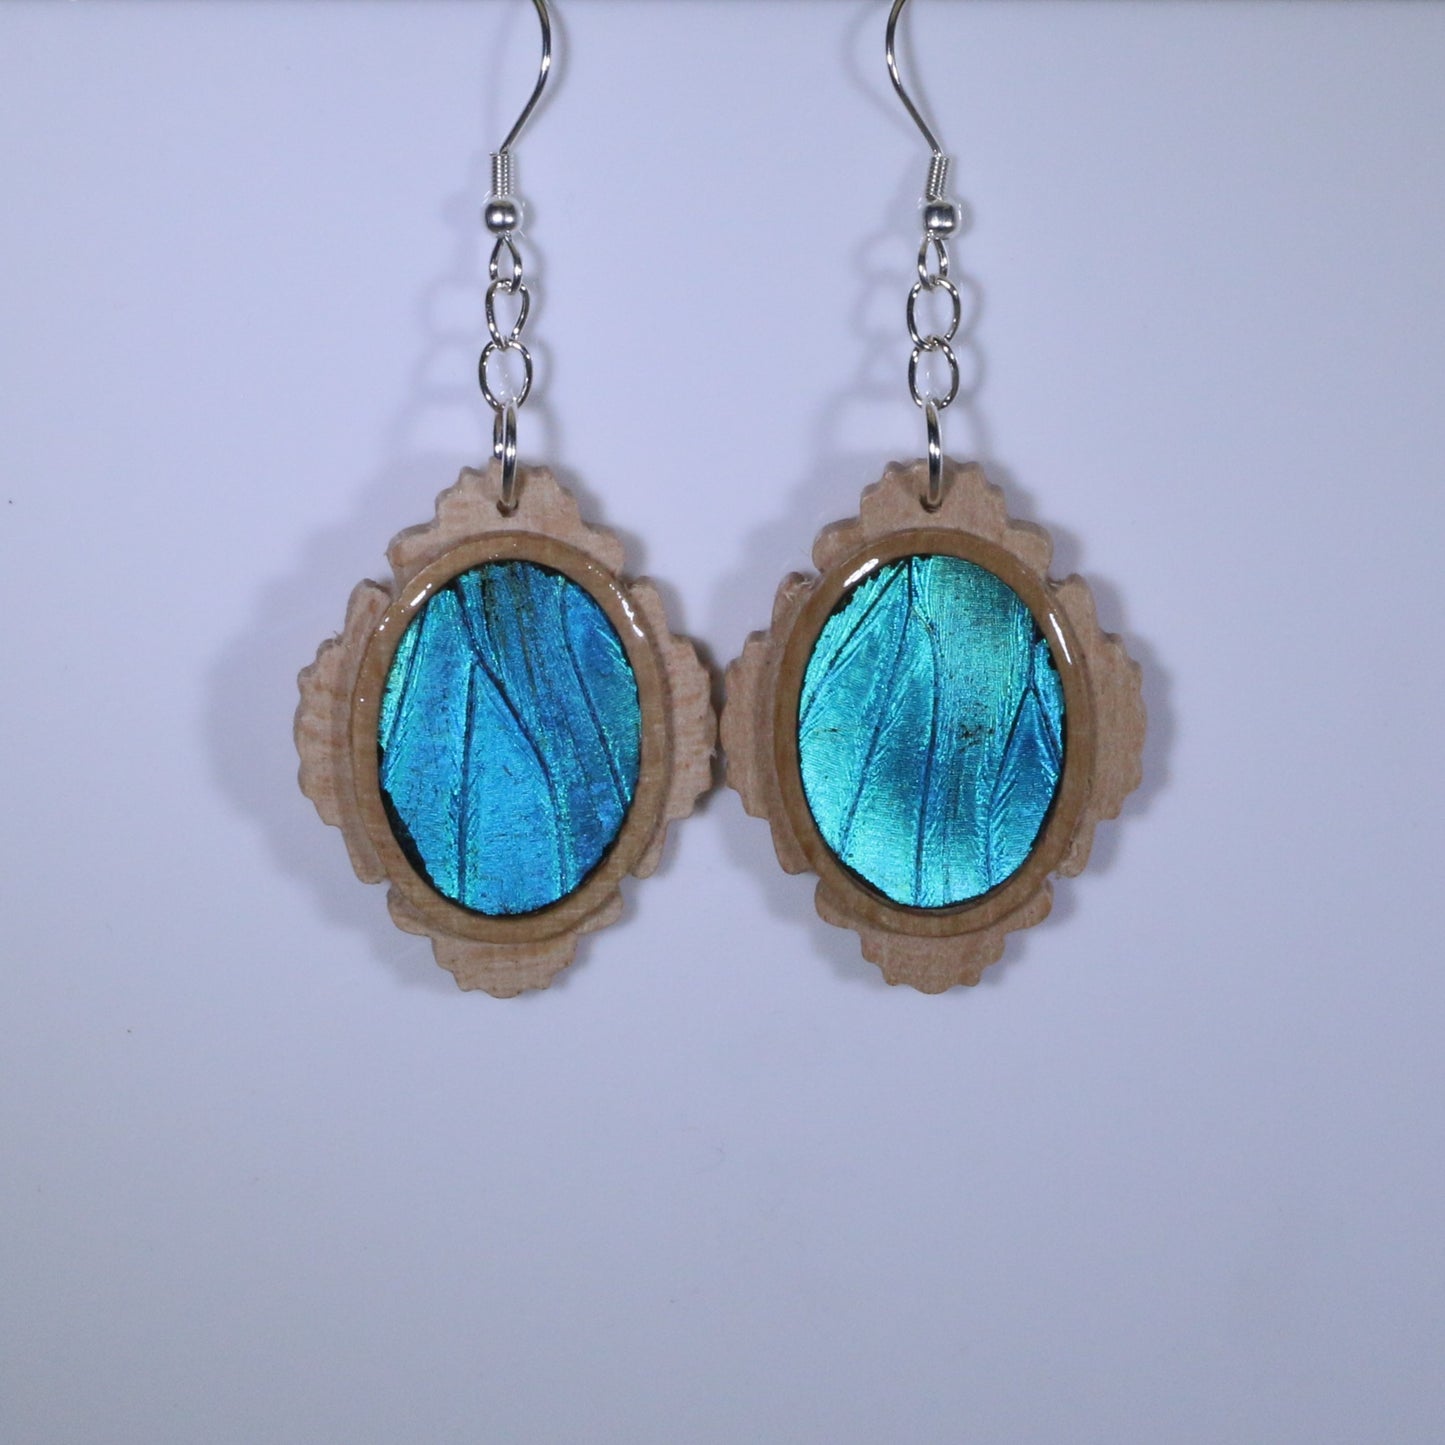 51651 - Real Butterfly Wing Jewelry - Earrings - Medium - Tan Wood - Oval - Filigree - Blue Morpho